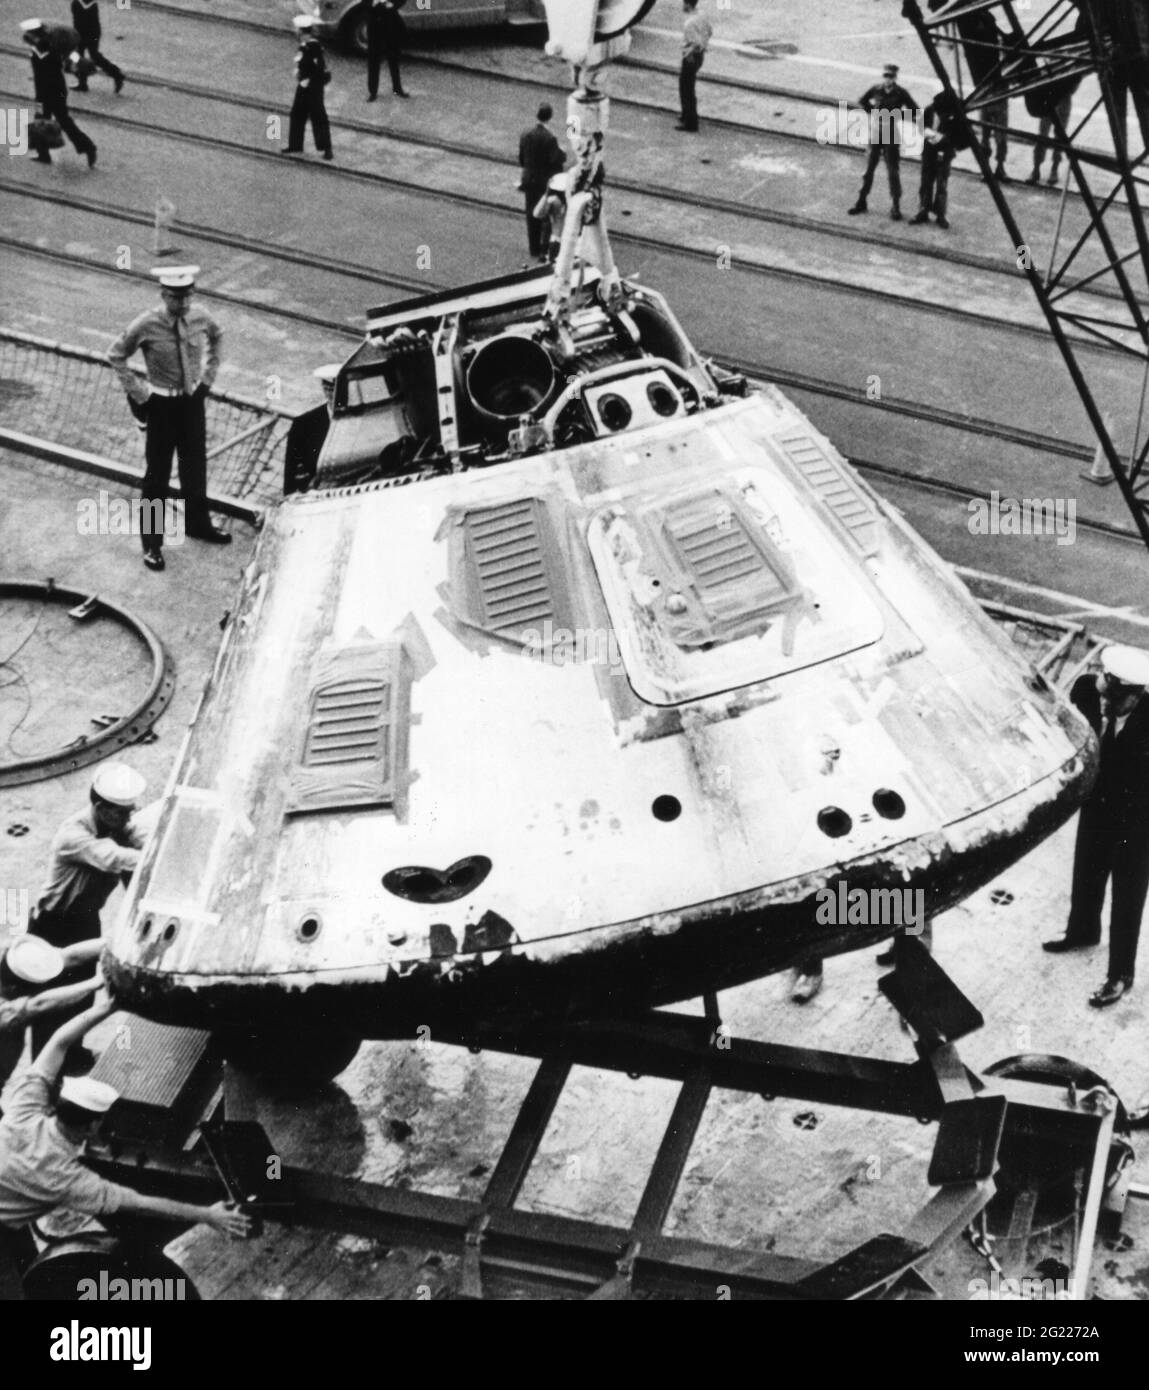 Aérospatiale / voyage dans l'espace, projet Apollo, 1961-1975, Apollo 7, 11.10.1968 - 22.10.1968, INFO-AUTORISATION-DROITS-SUPPLÉMENTAIRES-NON-DISPONIBLE Banque D'Images